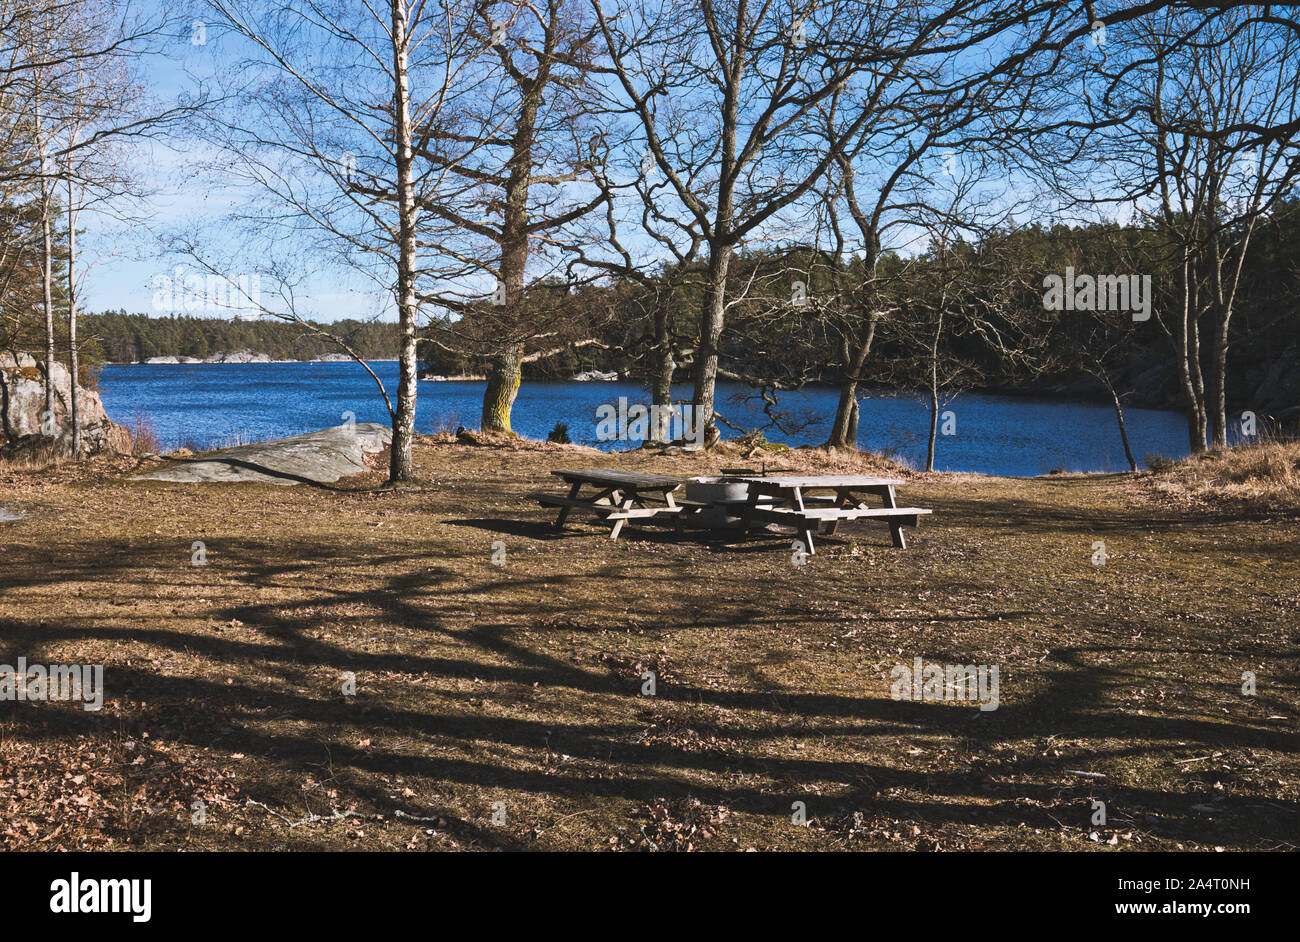 Table de pique-nique extérieure en bois par lac, Réserve naturelle de Bjorno (Bjorno Naturareservat), archipel de Stockholm, Suède Banque D'Images